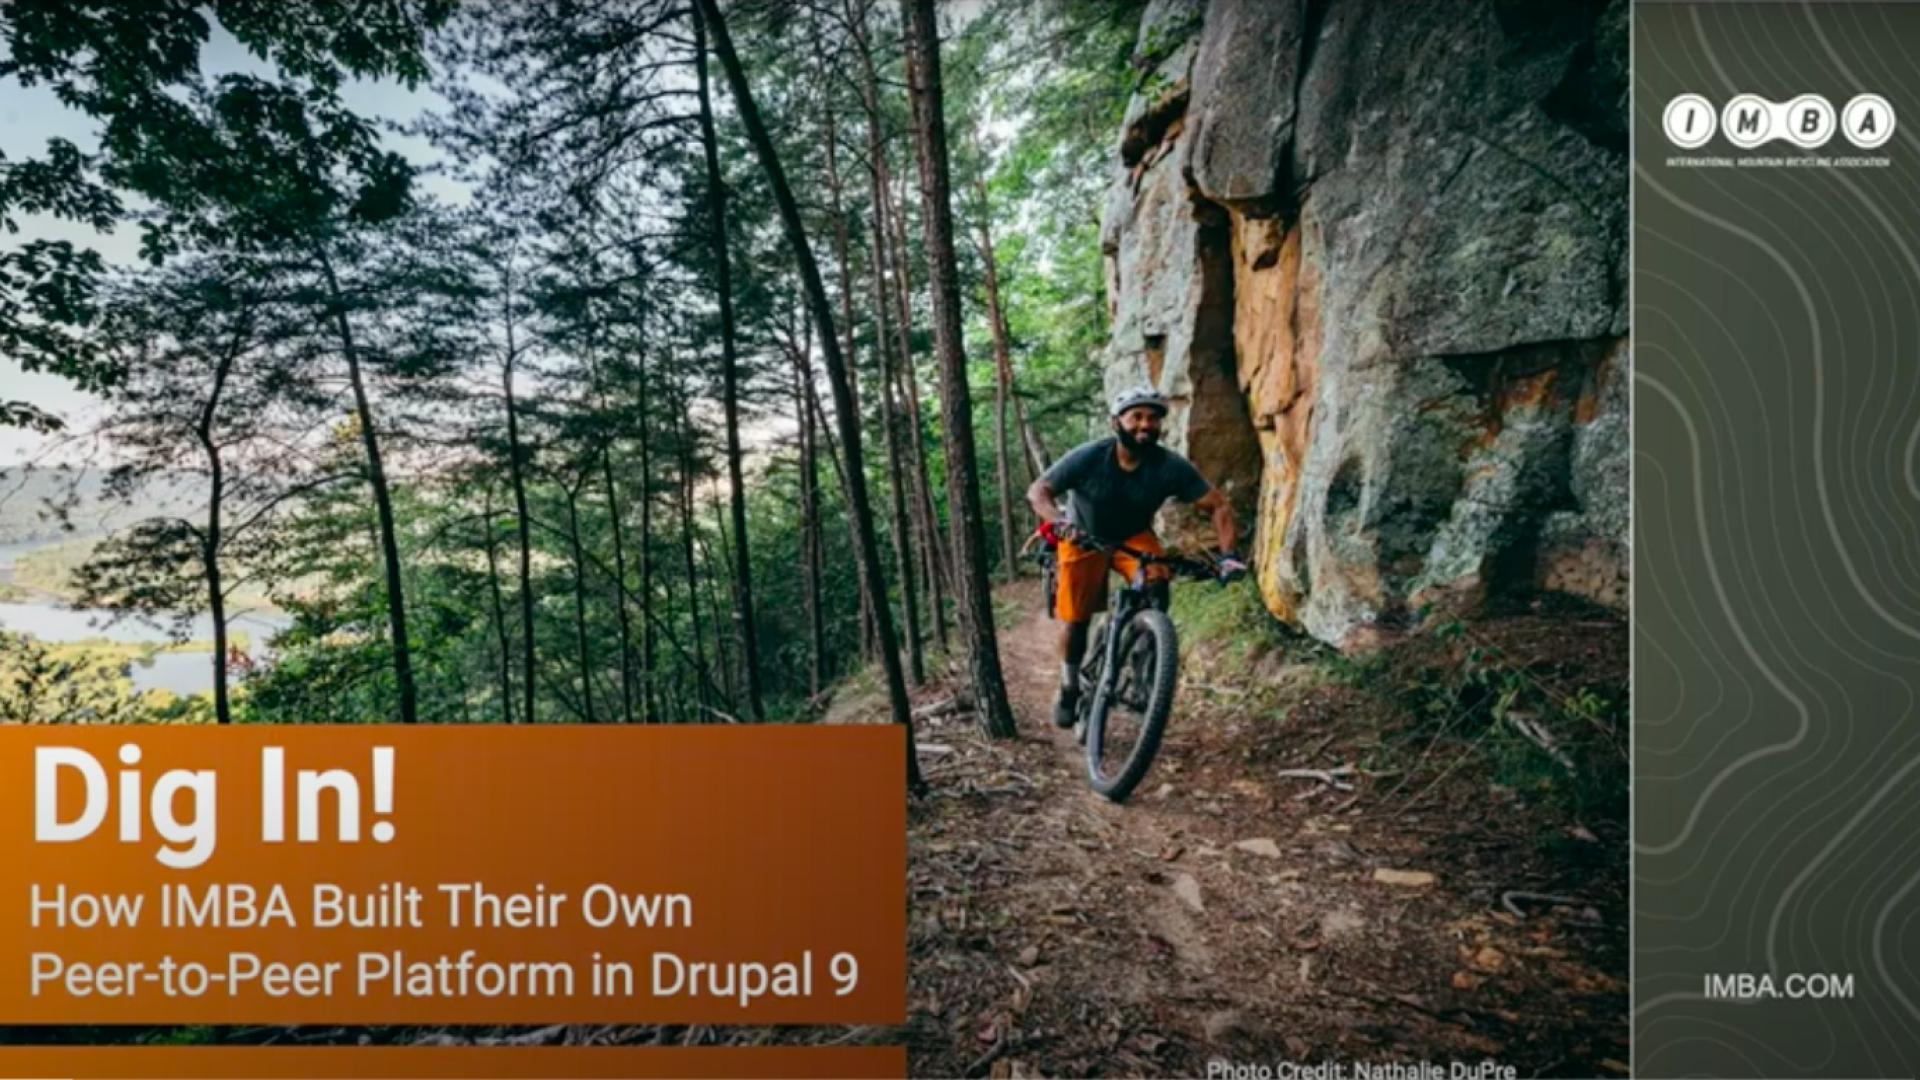 Dig In! how IMBA built their own peer-to-peer fundraising platform in Drupal 9